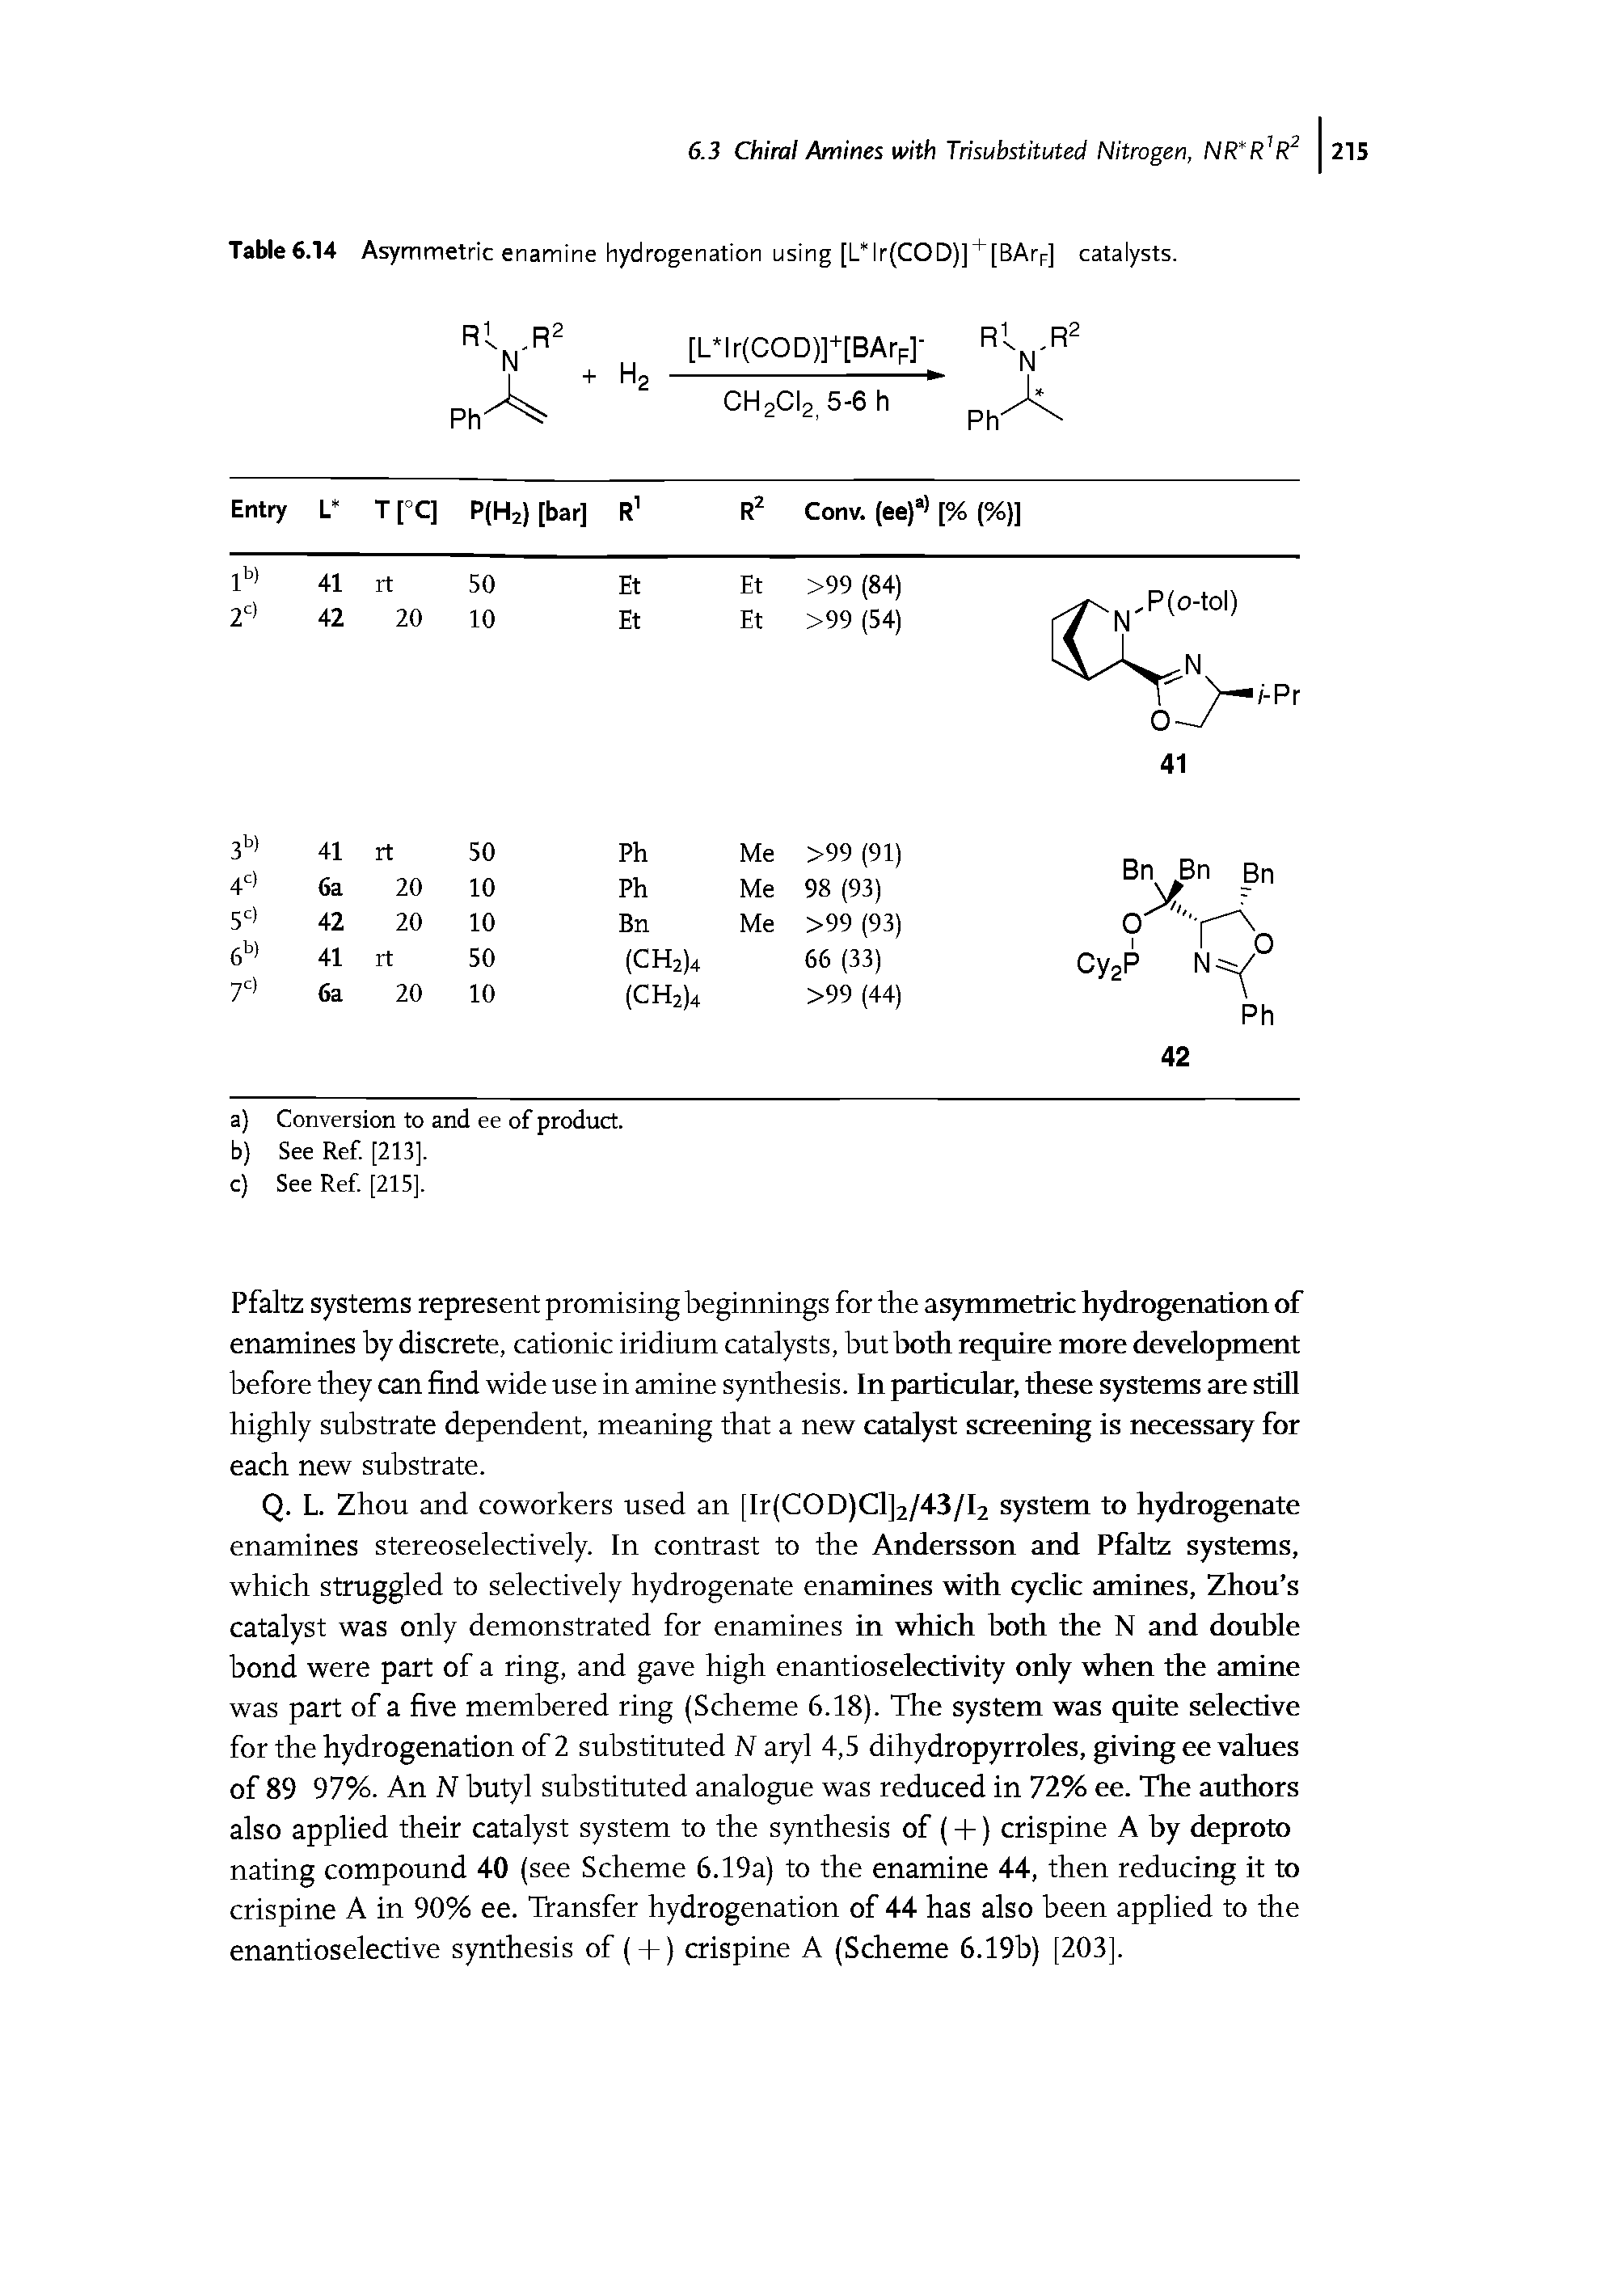 Table 6.14 Asymmetric enamine hydrogenation using [L"lr(COD)] [BArr] catalysts.